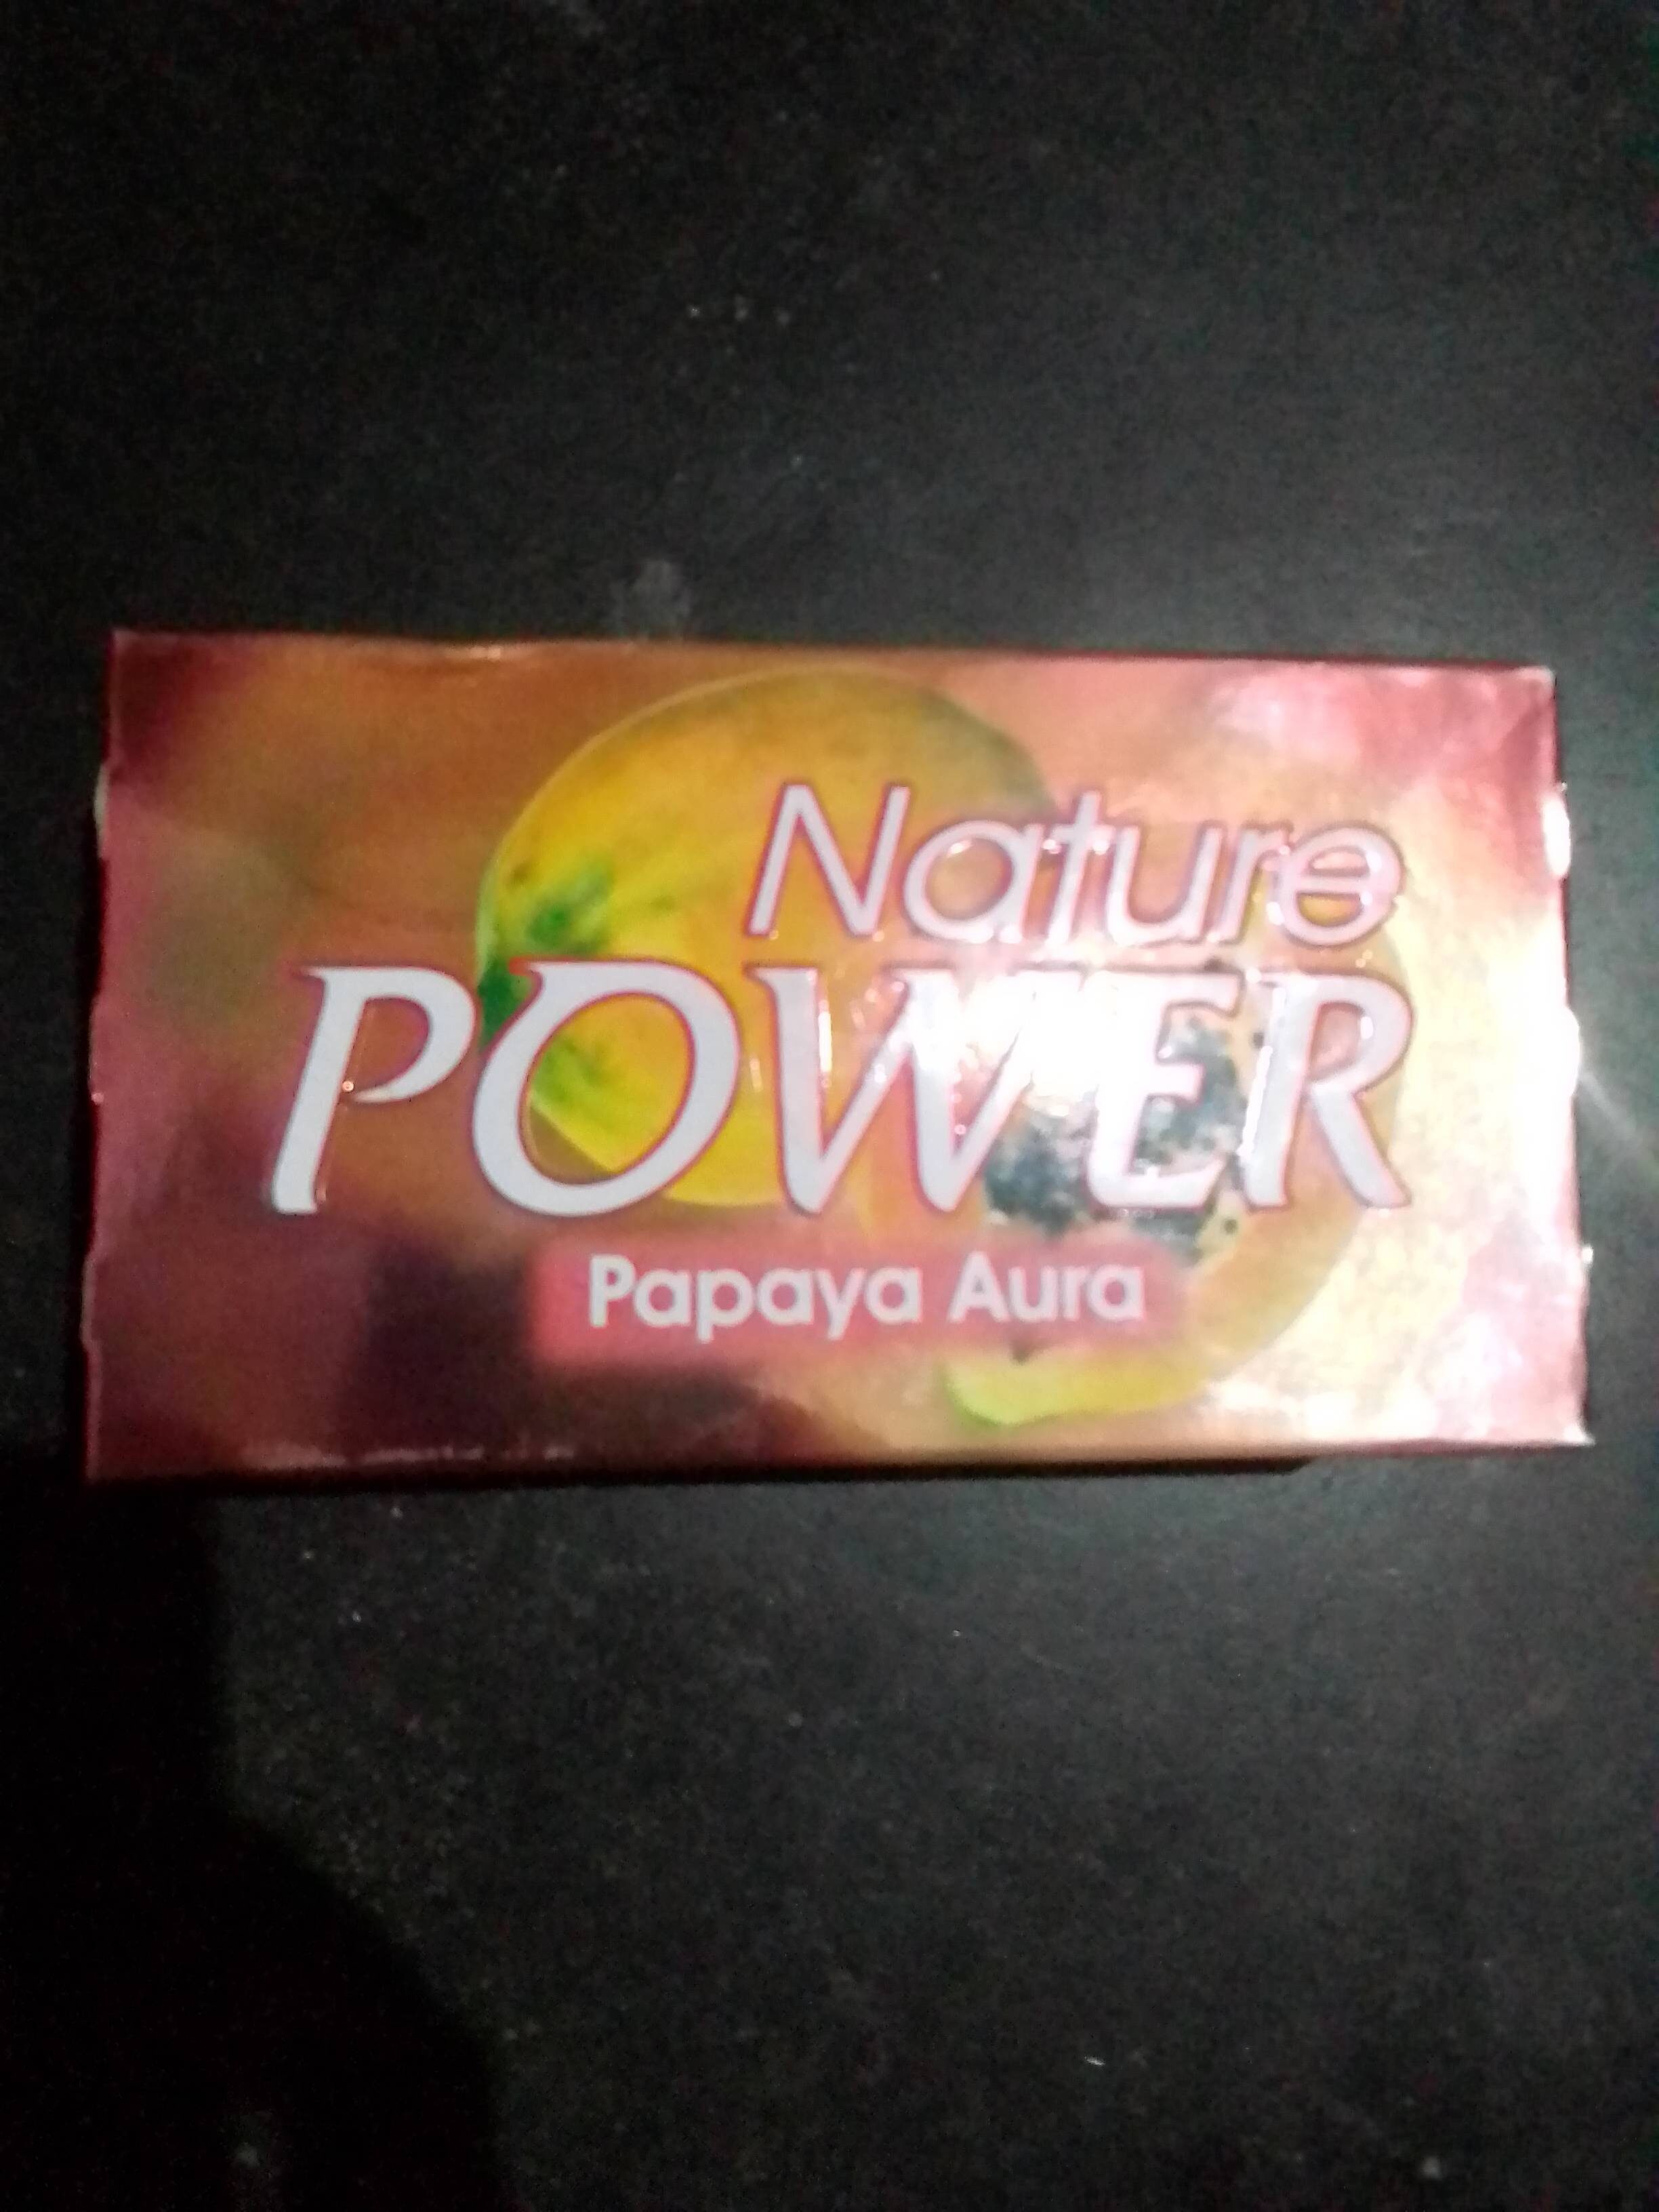 Nature power papaya soap - Product - en